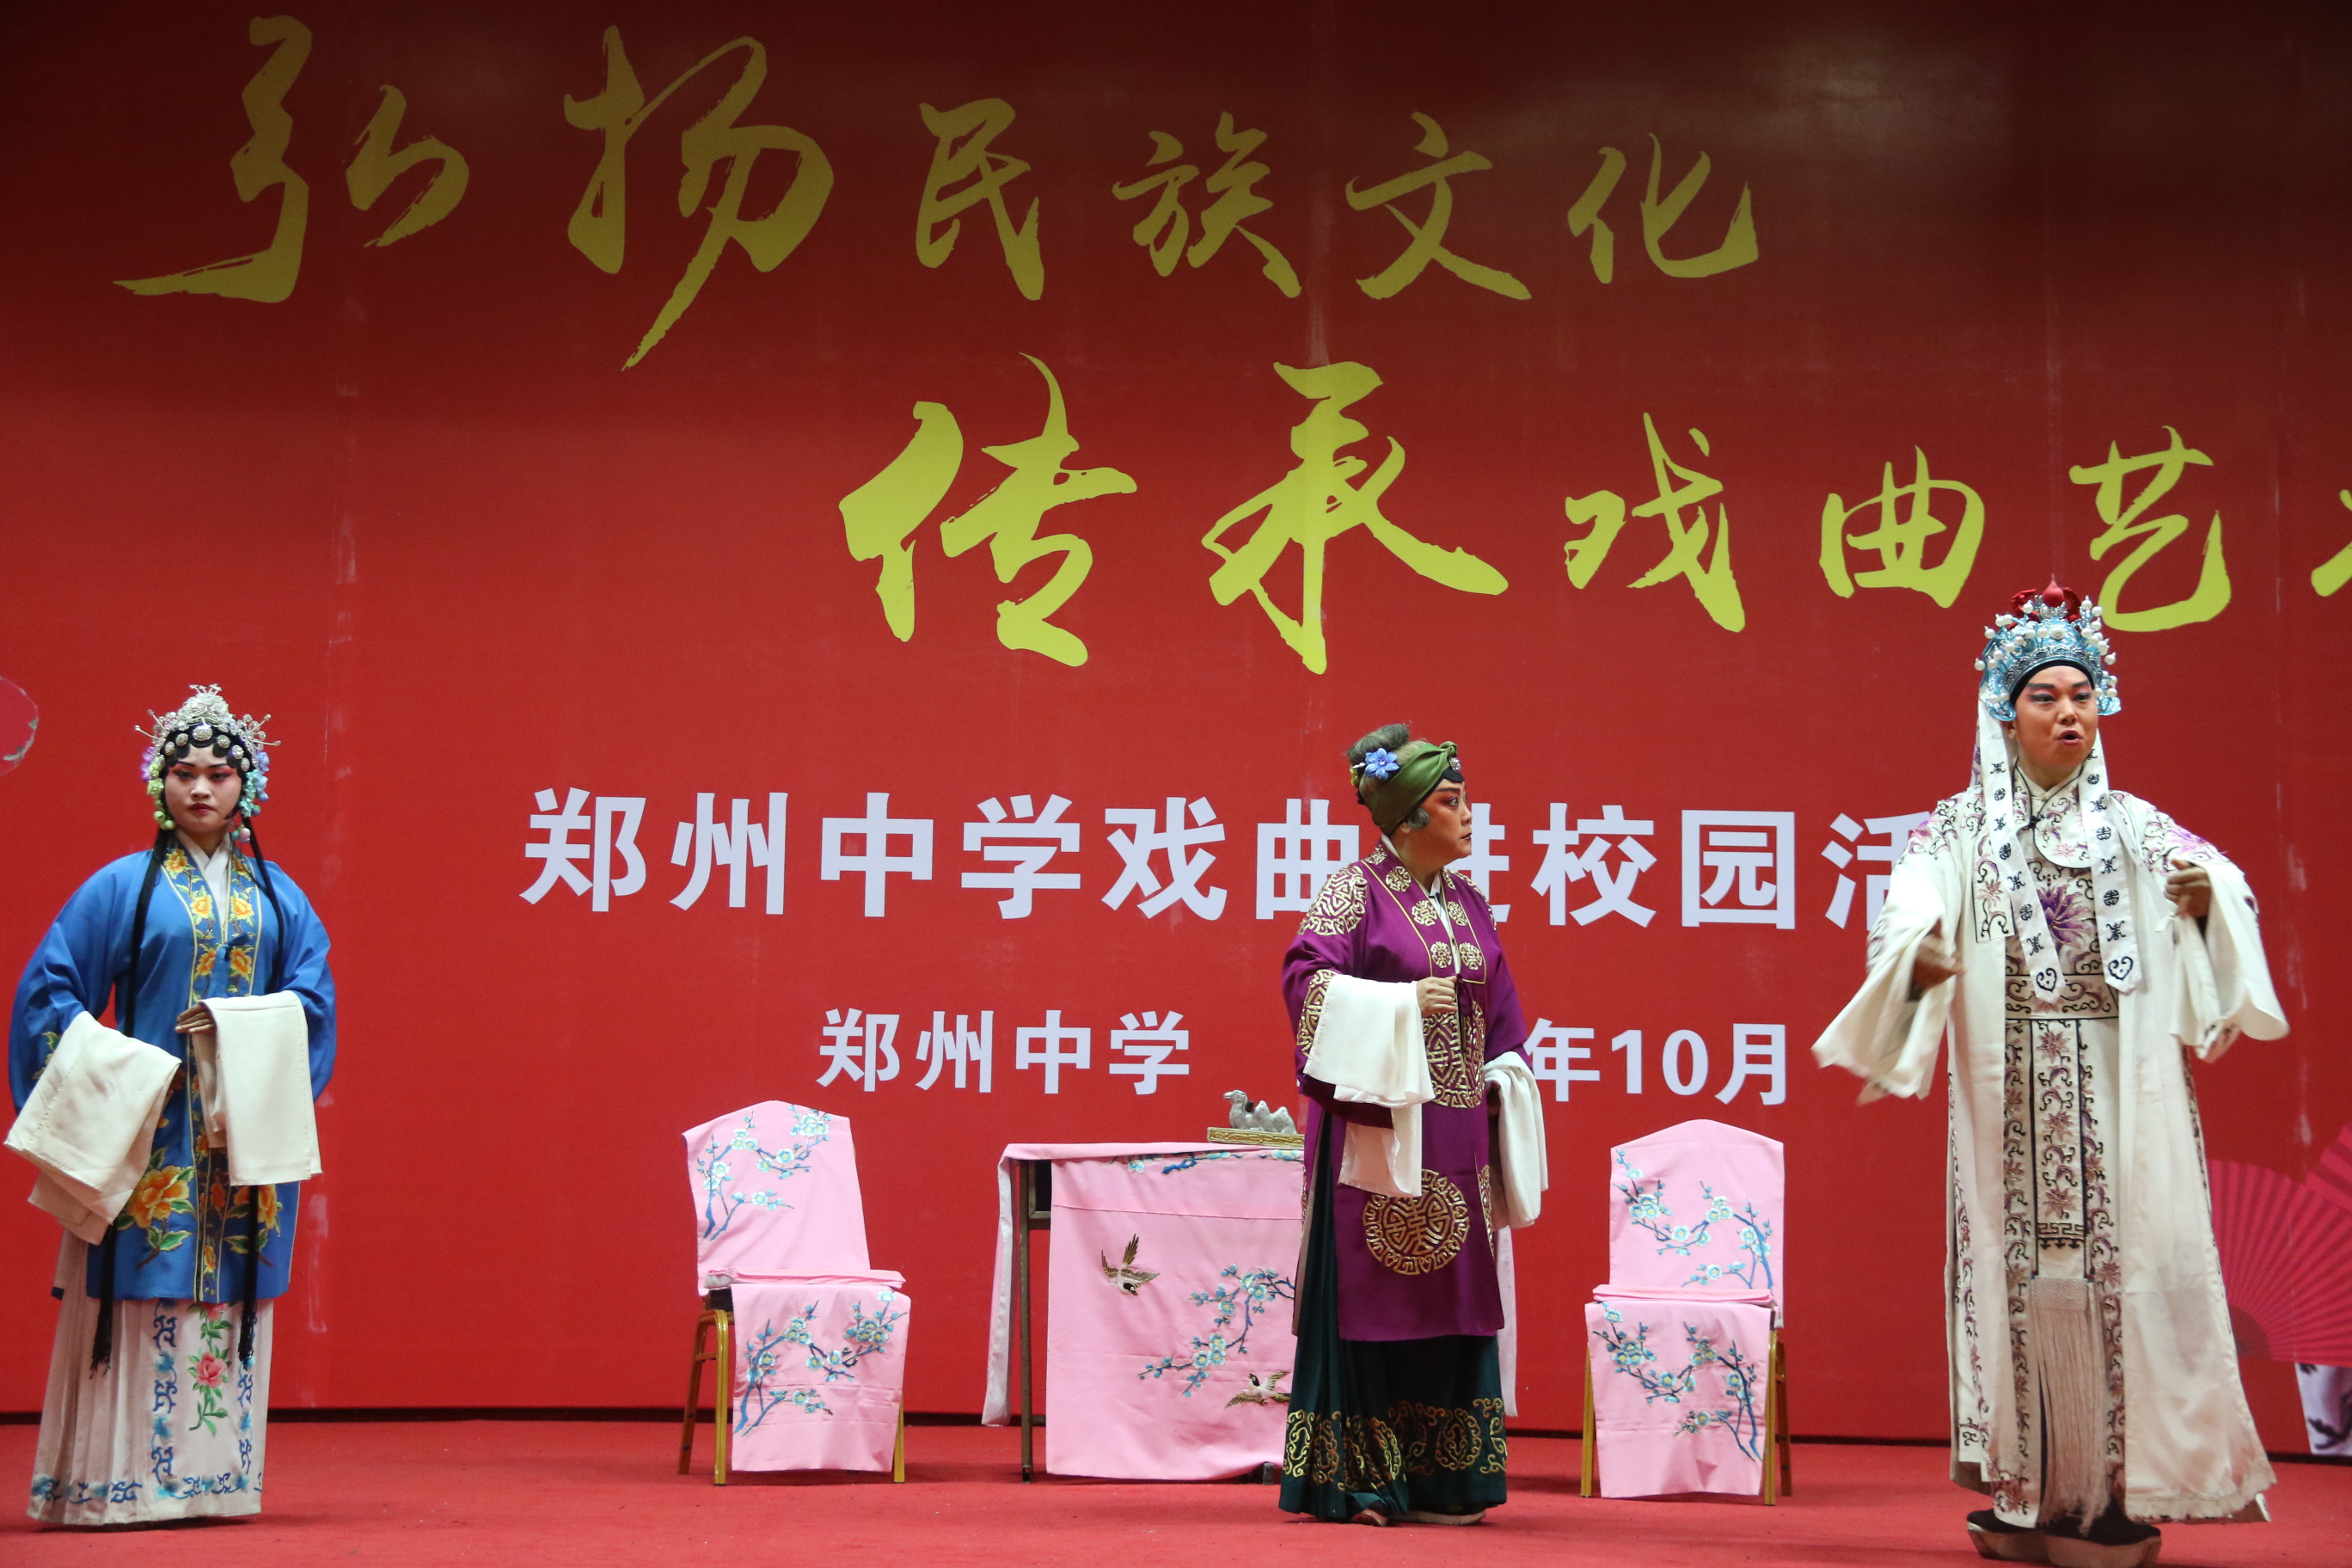 弘扬传统文化,传承戏曲艺术,郑州中学开展戏曲进校园活动